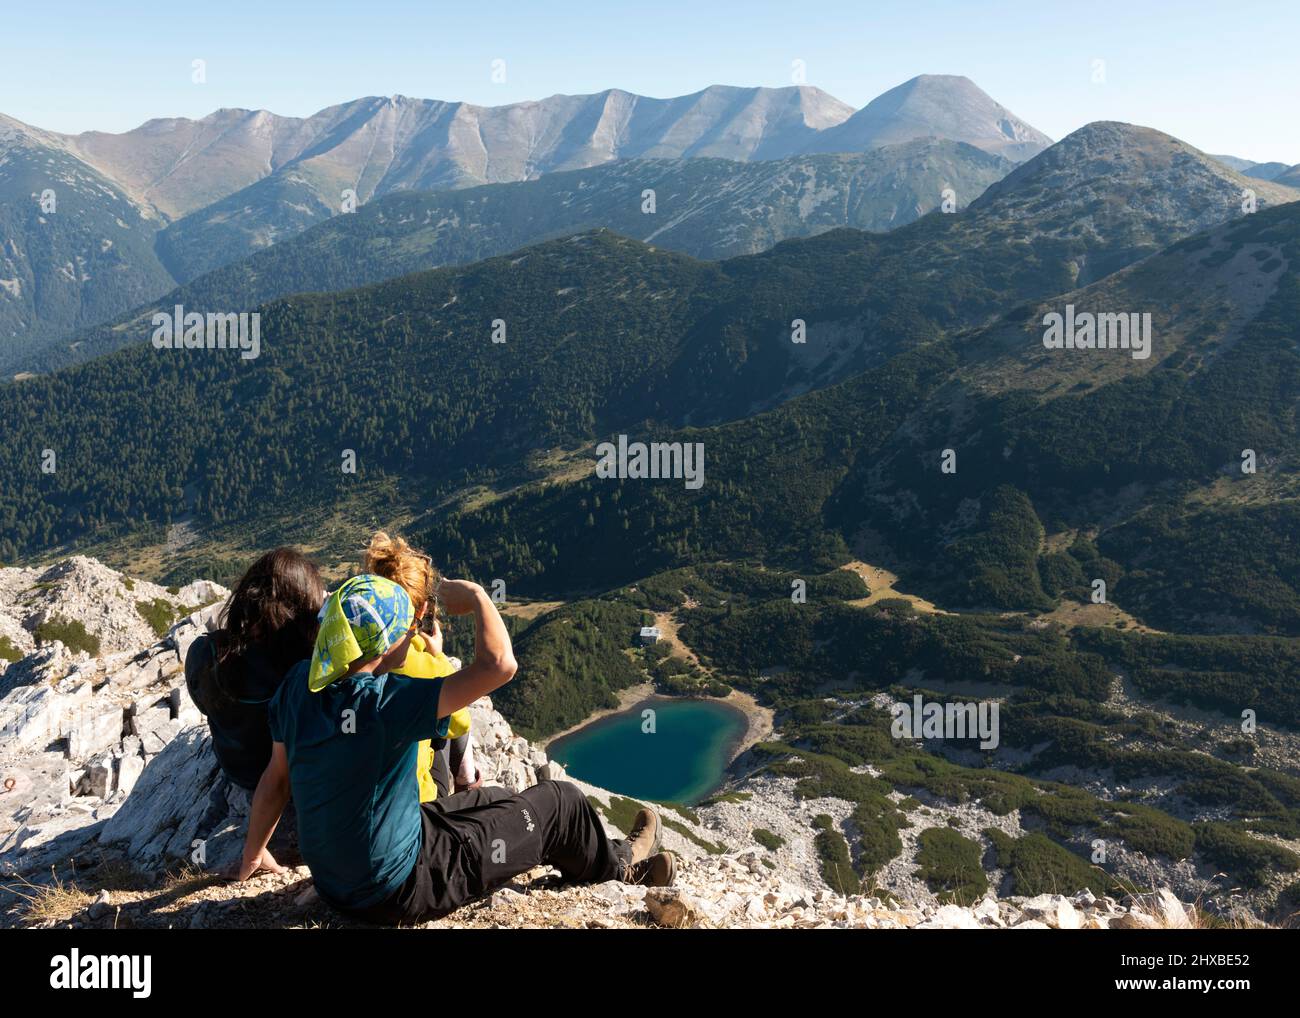 Hikers on Sinanitsa Peak at 2516m overlooking Sinanitsa glacial lake and Vihren Mountain Ridge in Pirin Mountain, Bulgaria, Eastern Europe, Balkans Stock Photo